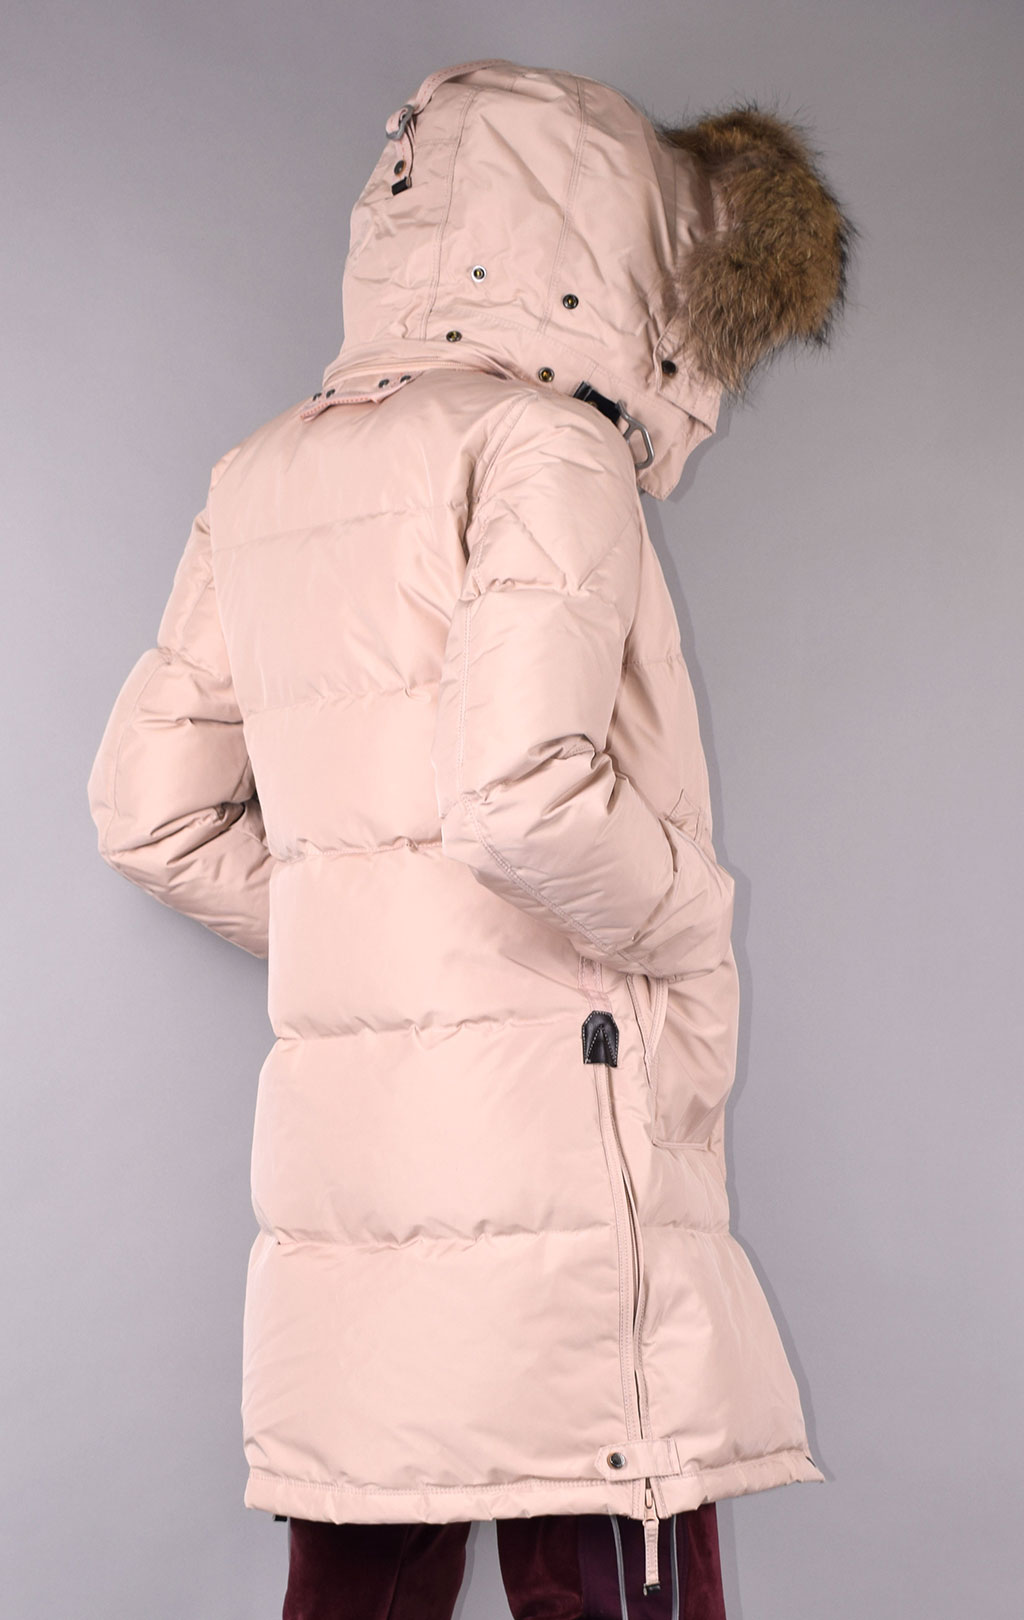 Женская куртка-пуховик PARAJUMPERS LONG BEAR FW 19/20 powder pink 